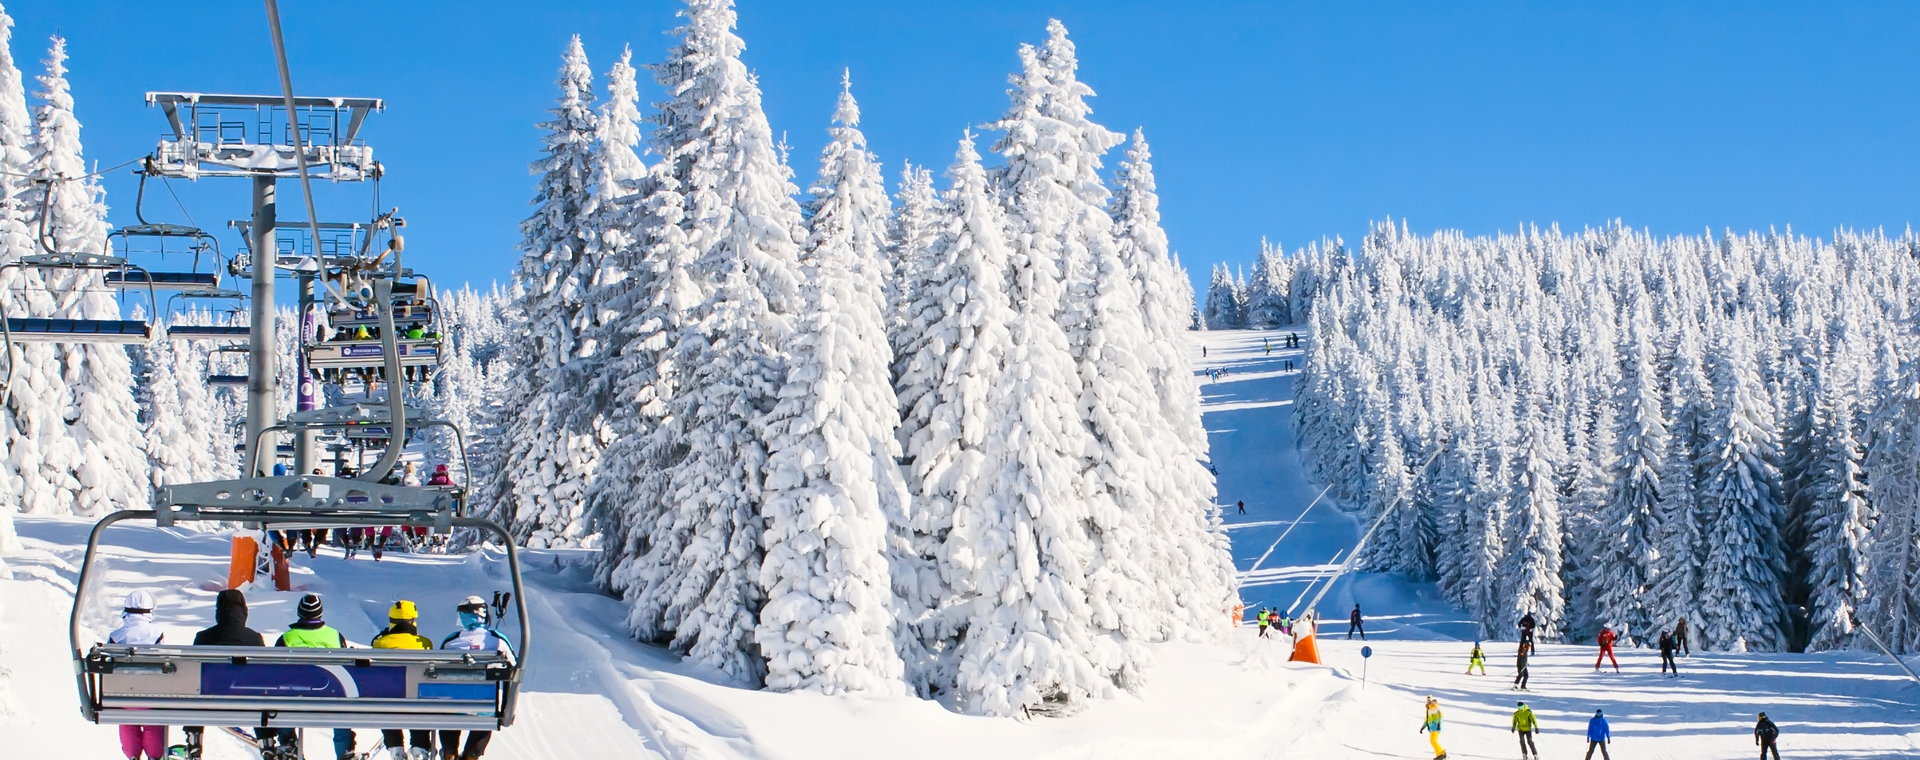 Odpowiednie przygotowanie się do jazdy na nartach może uchronić przed problemami i rozczarowaniami